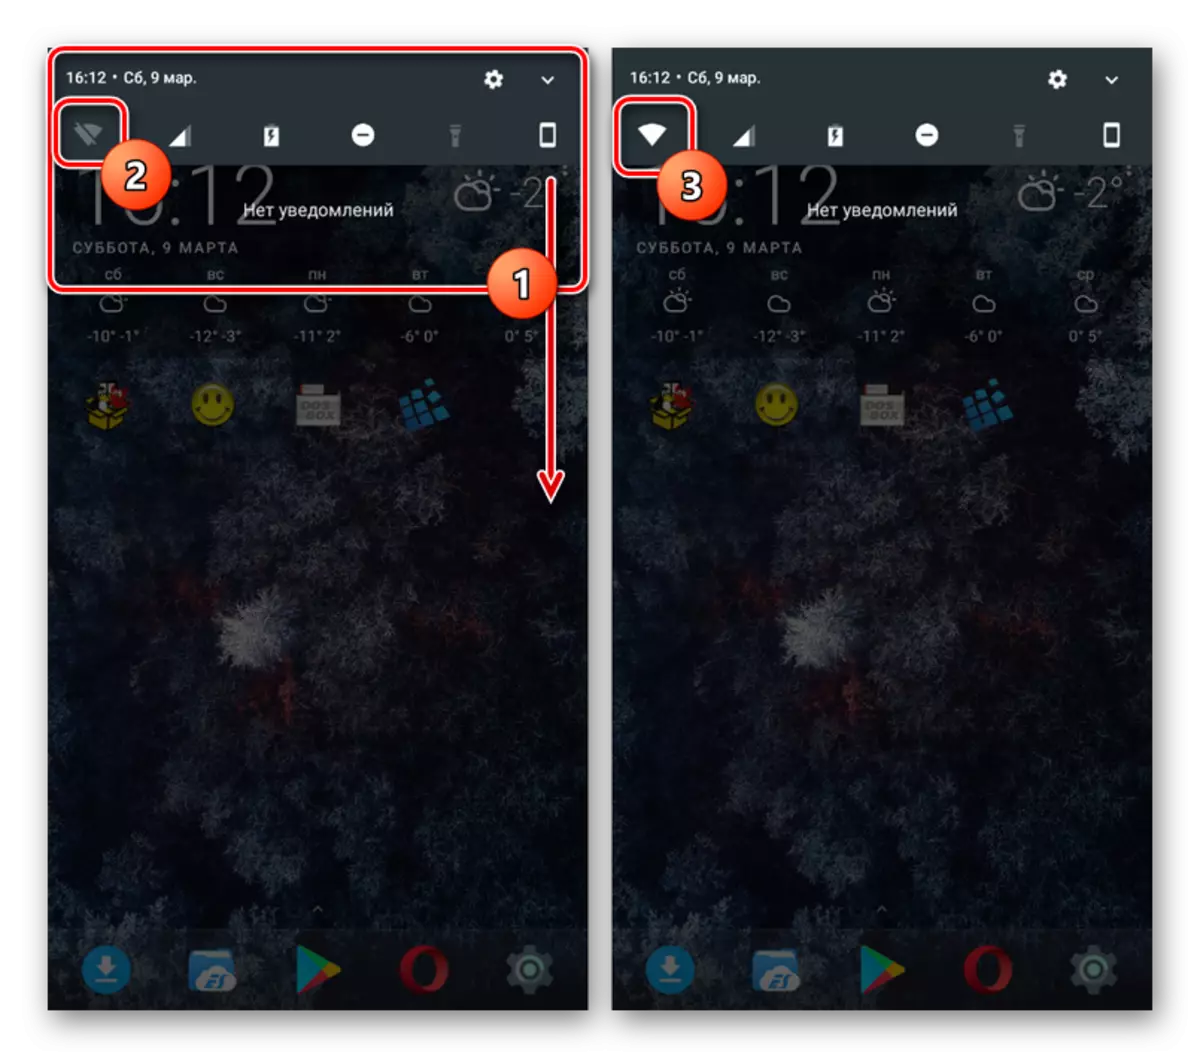 Ativando o Wi-Fi através do painel Notificações do Android